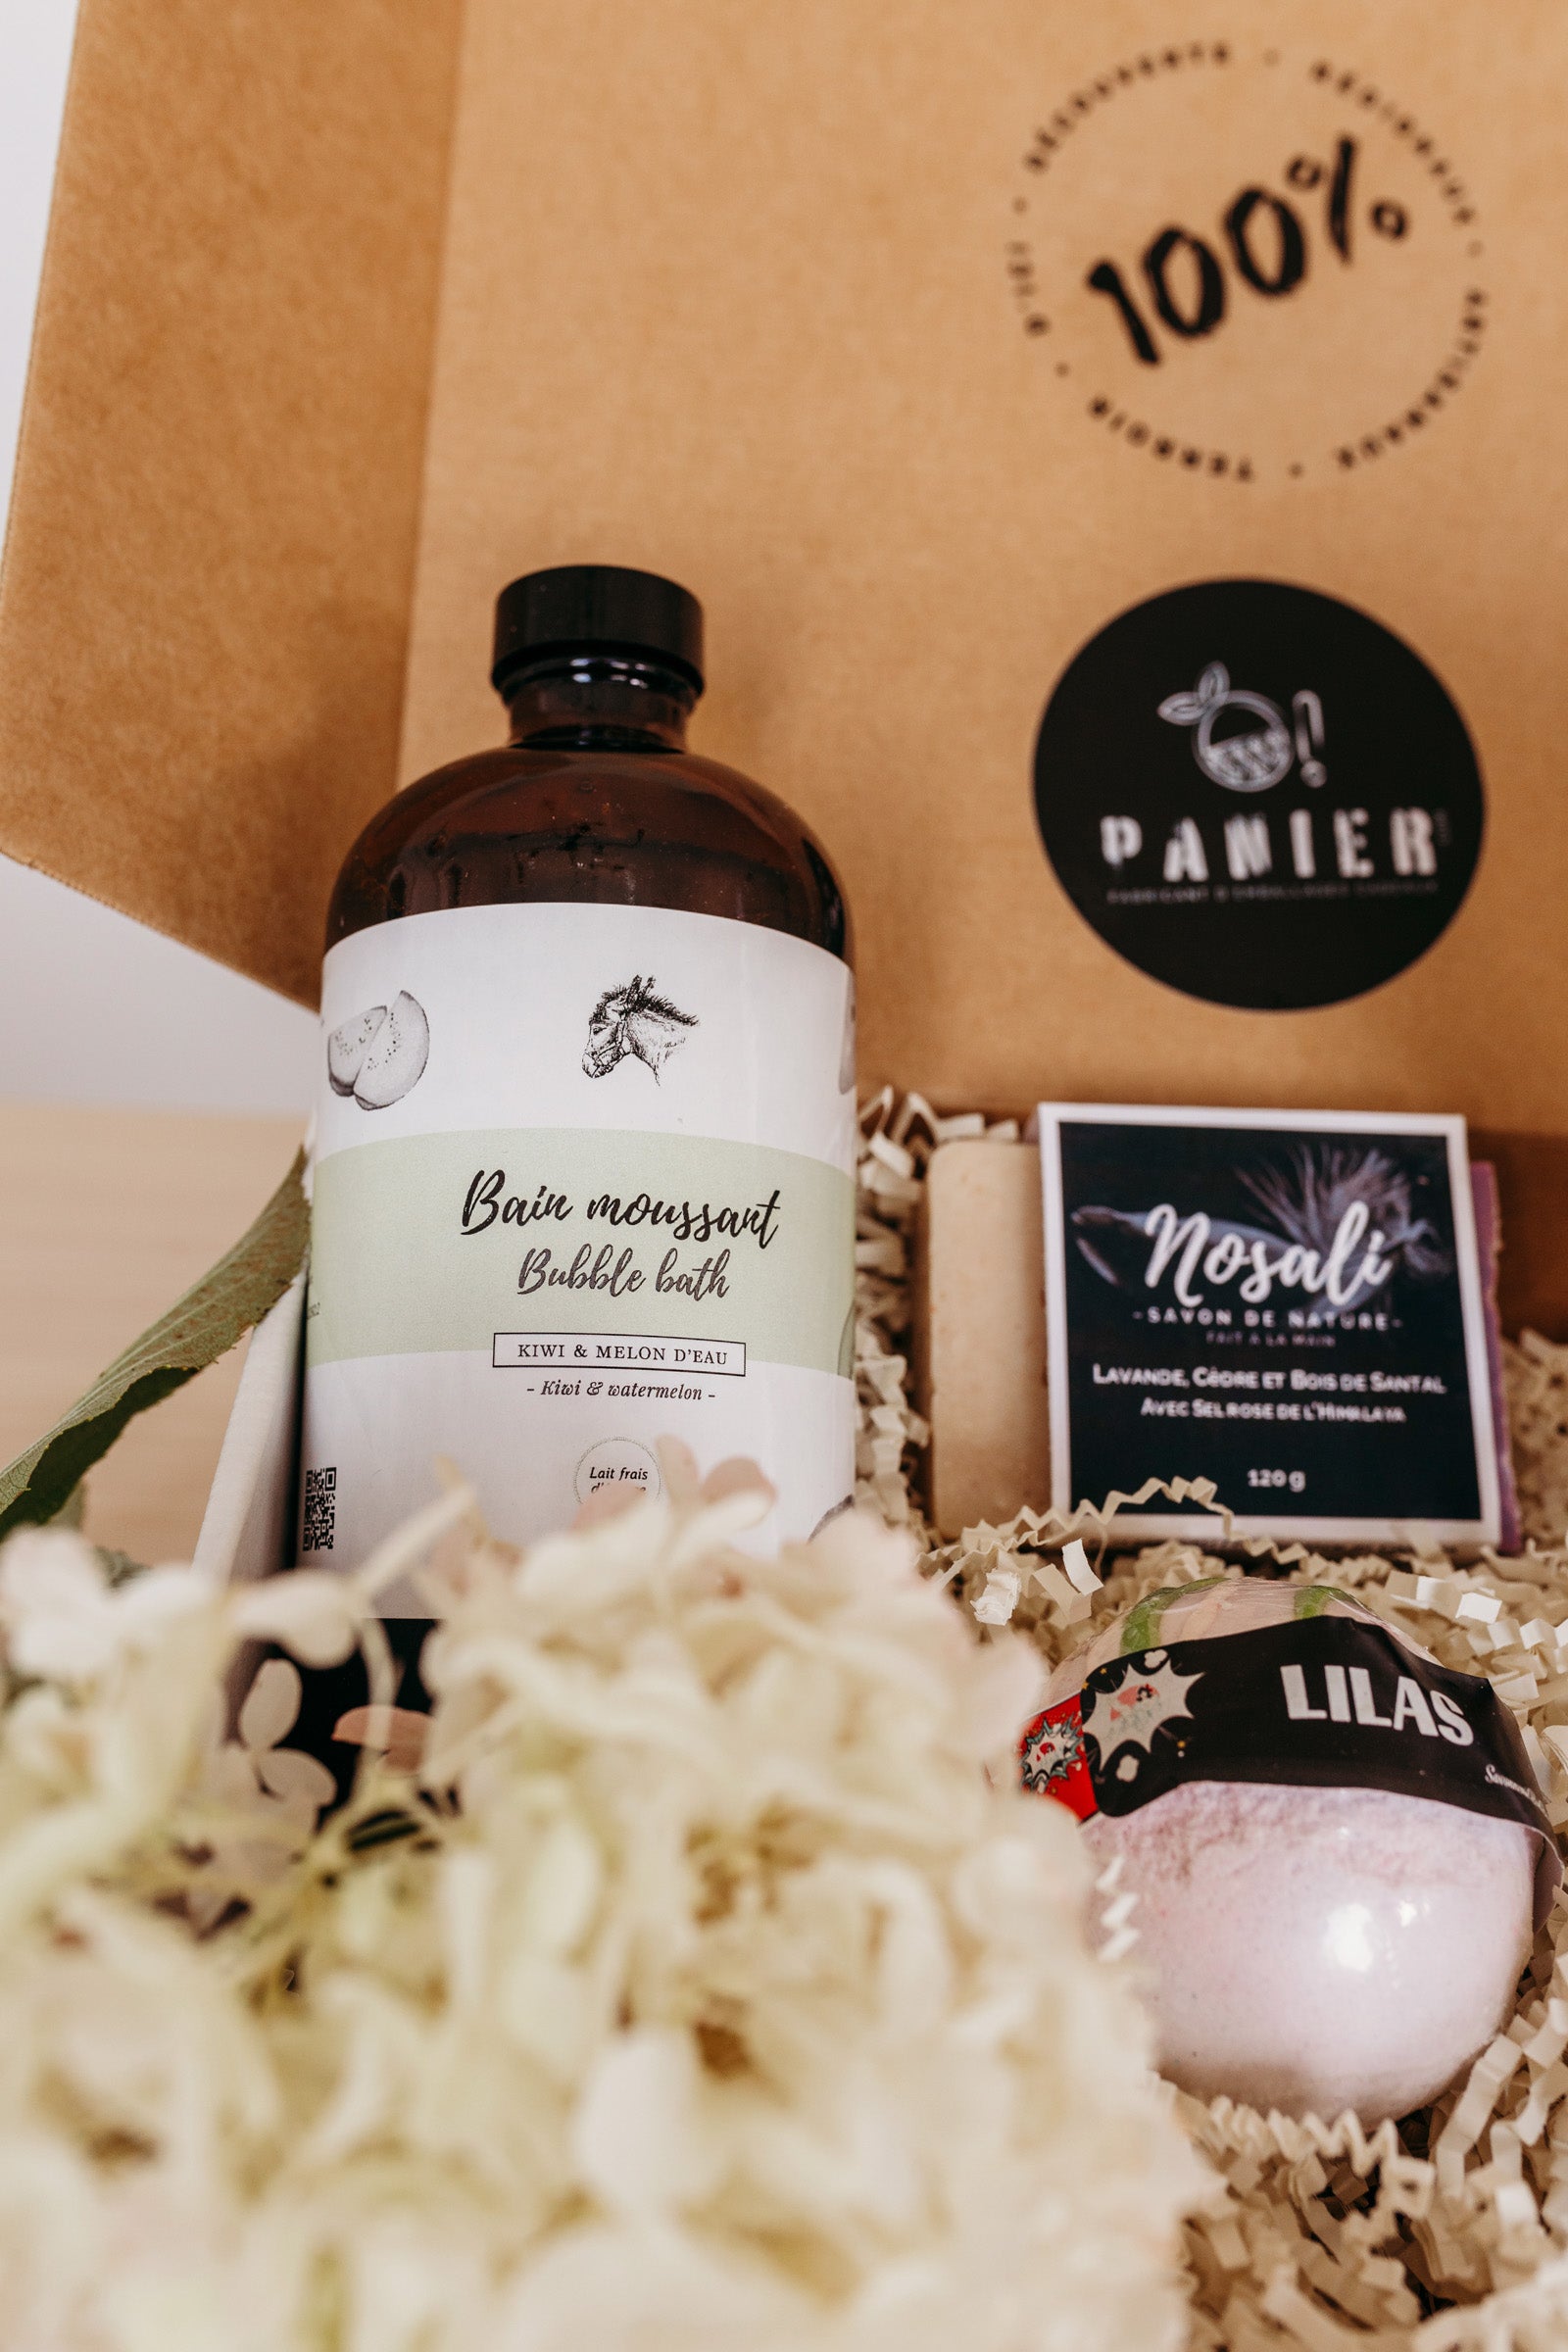 Bouteille de bain moussant kiwi dans une boîte cadeau de produits faits au Québec